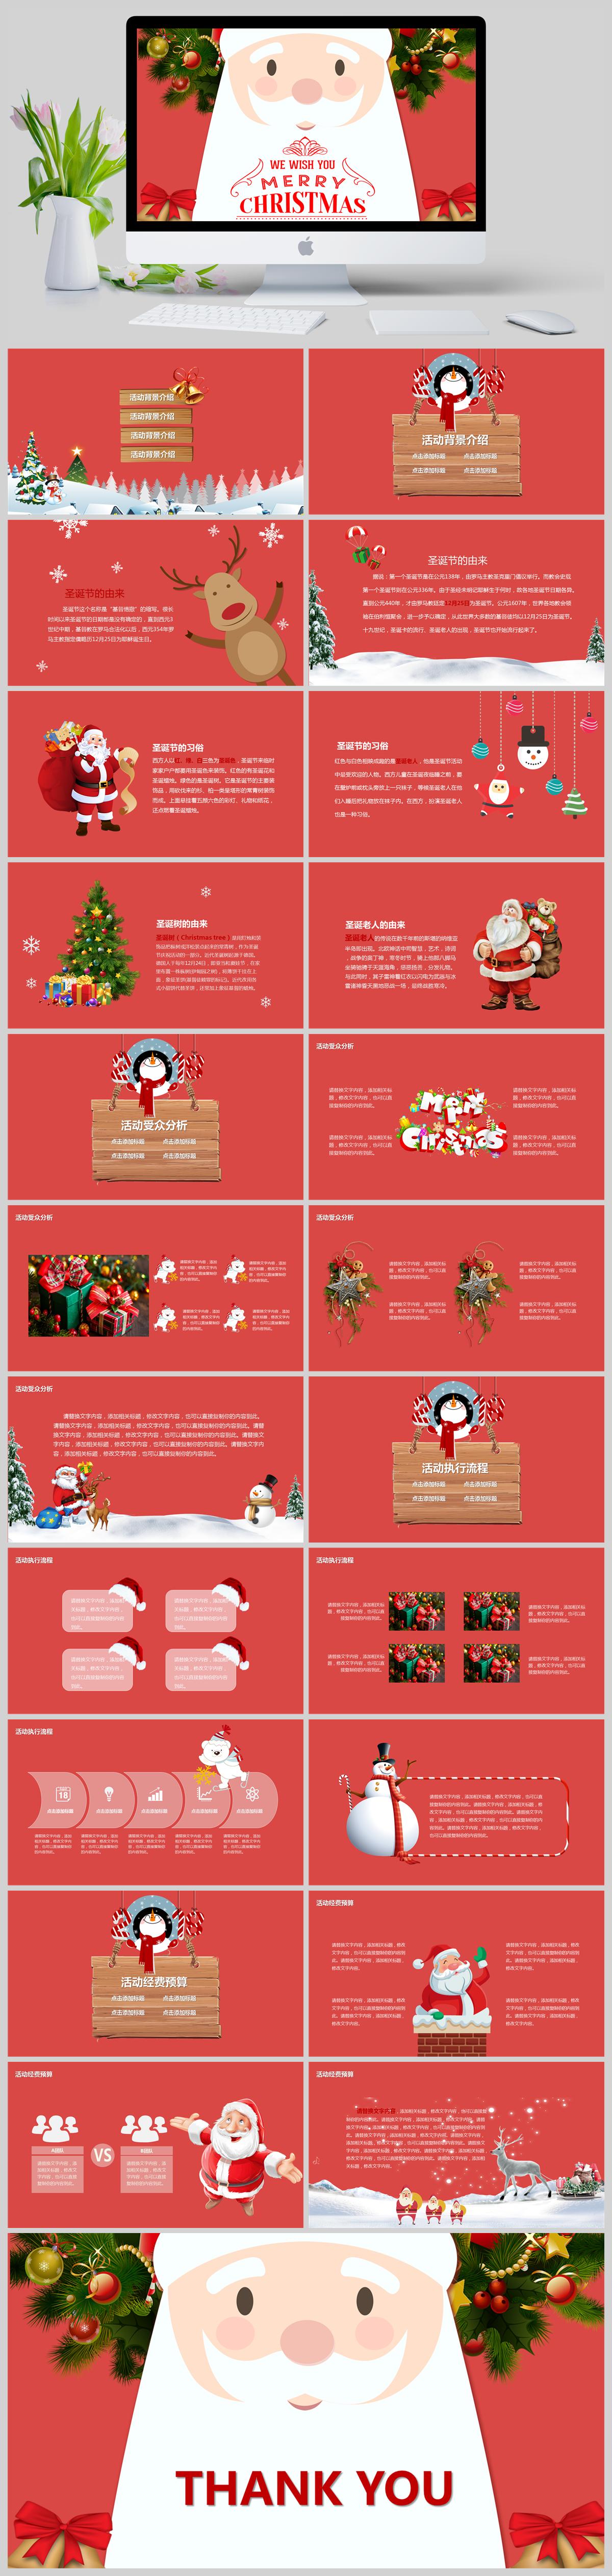 圣诞老人圣诞节节日来历文化介绍PPT模板下载